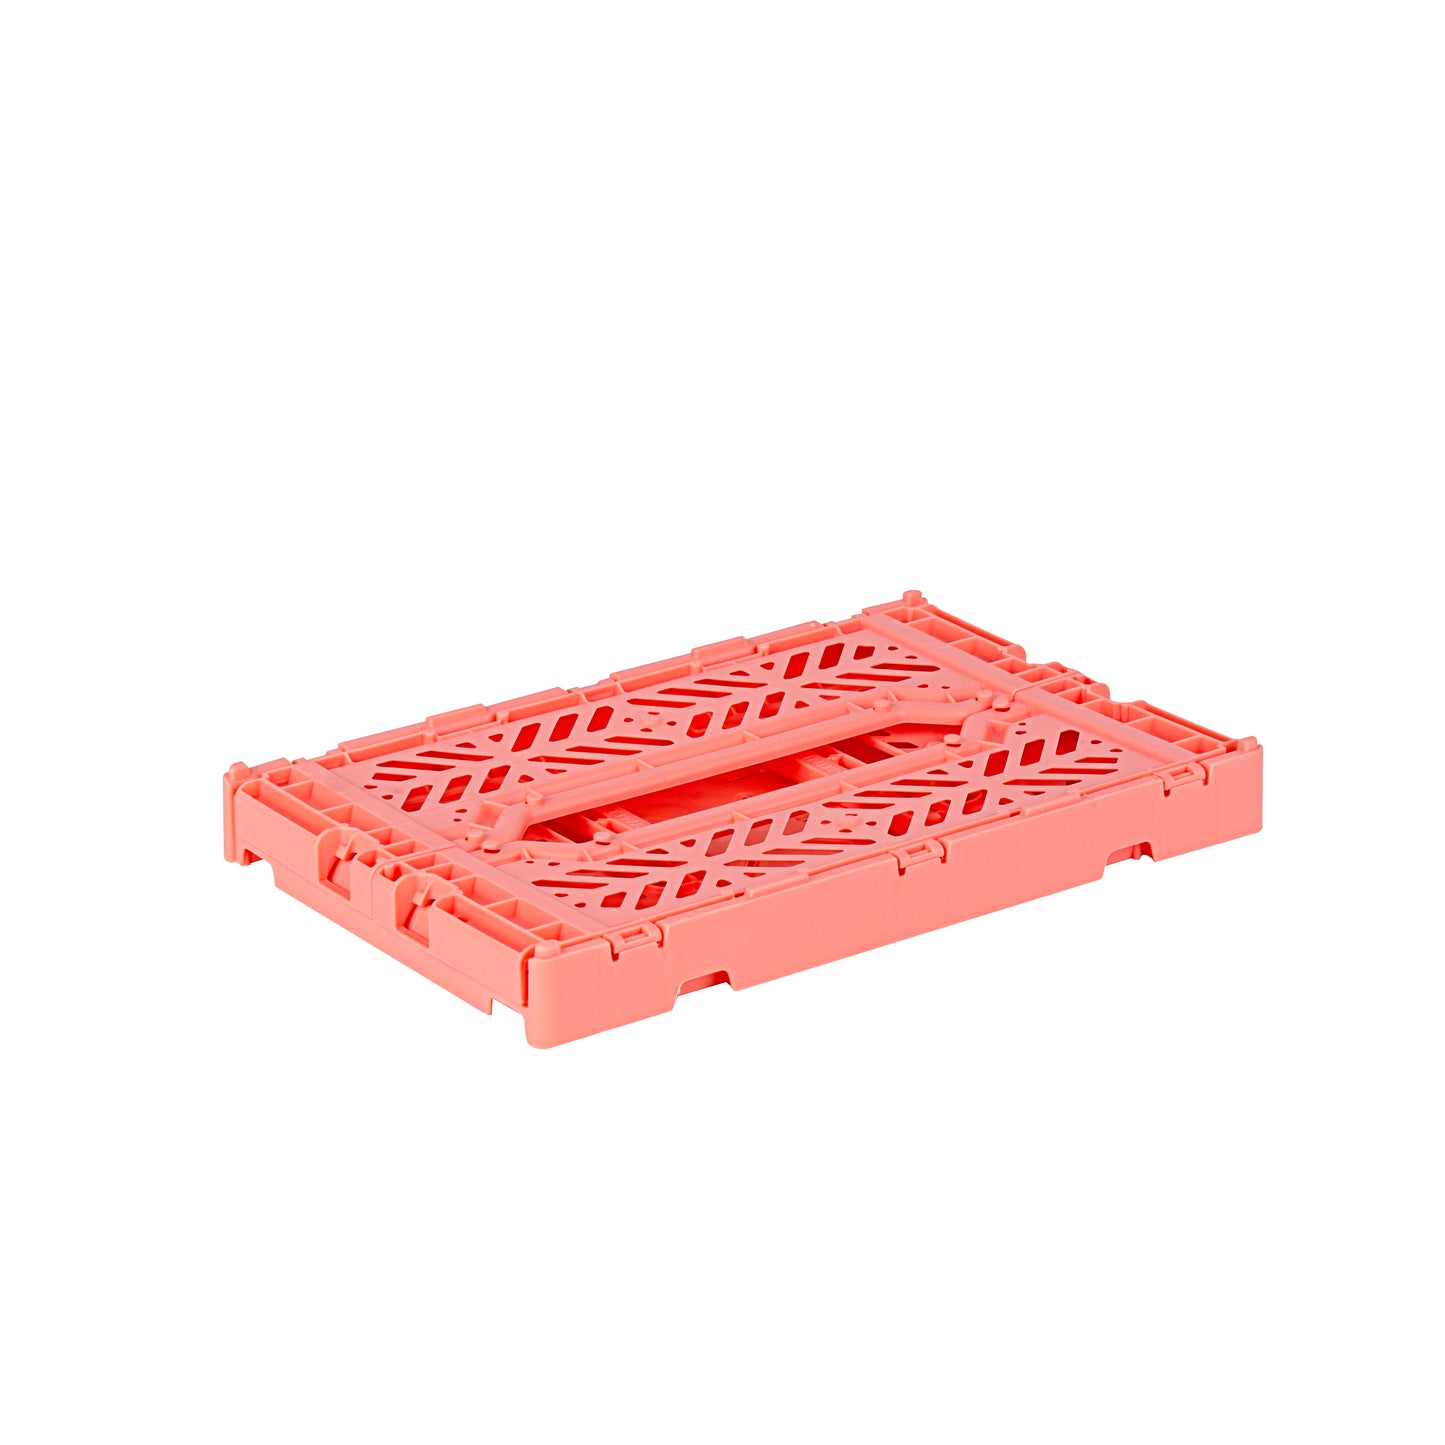 
                  
                    Mini Salmon Pink Folding Crate
                  
                